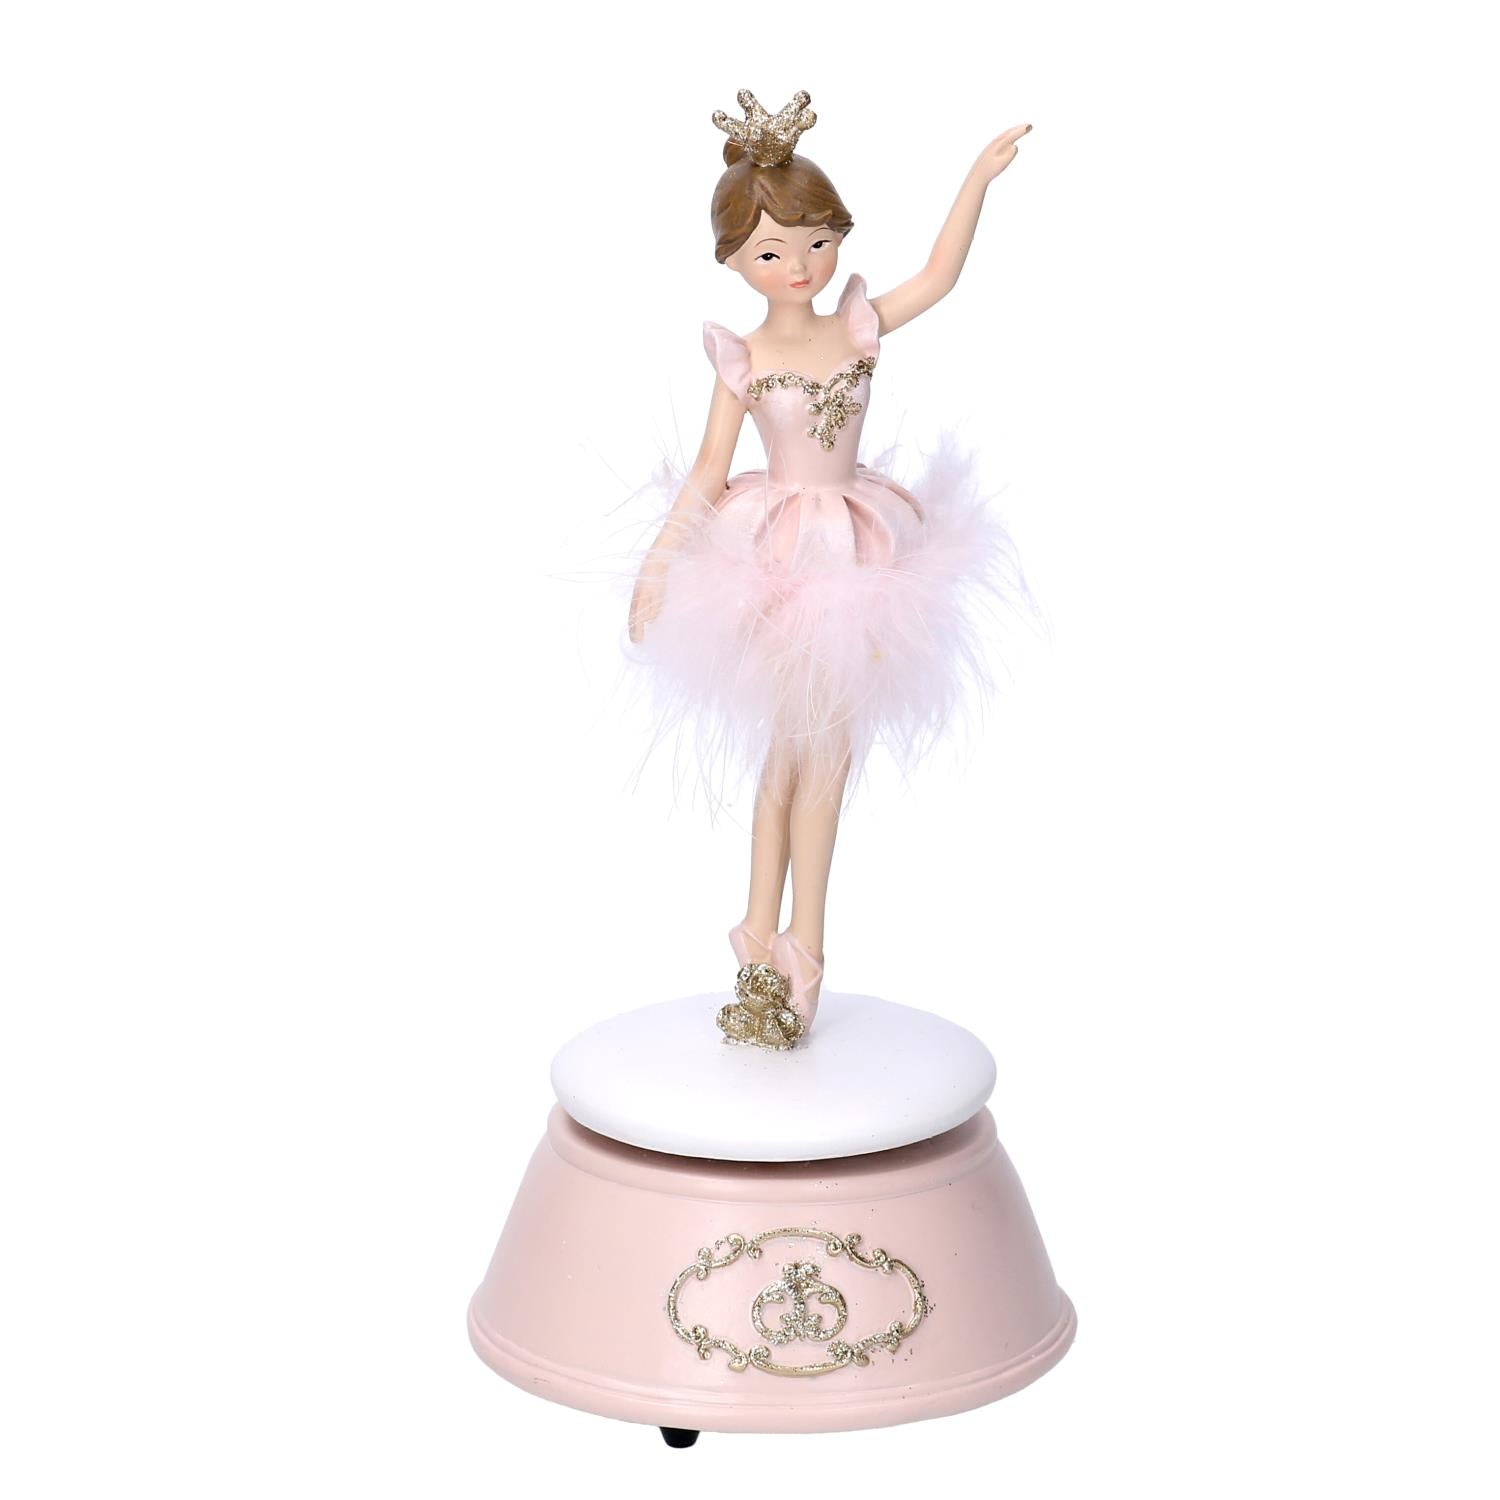 Carillon Ballerina, Resina, Rosa, 10,5x10,5x22,5cm – Papee Home